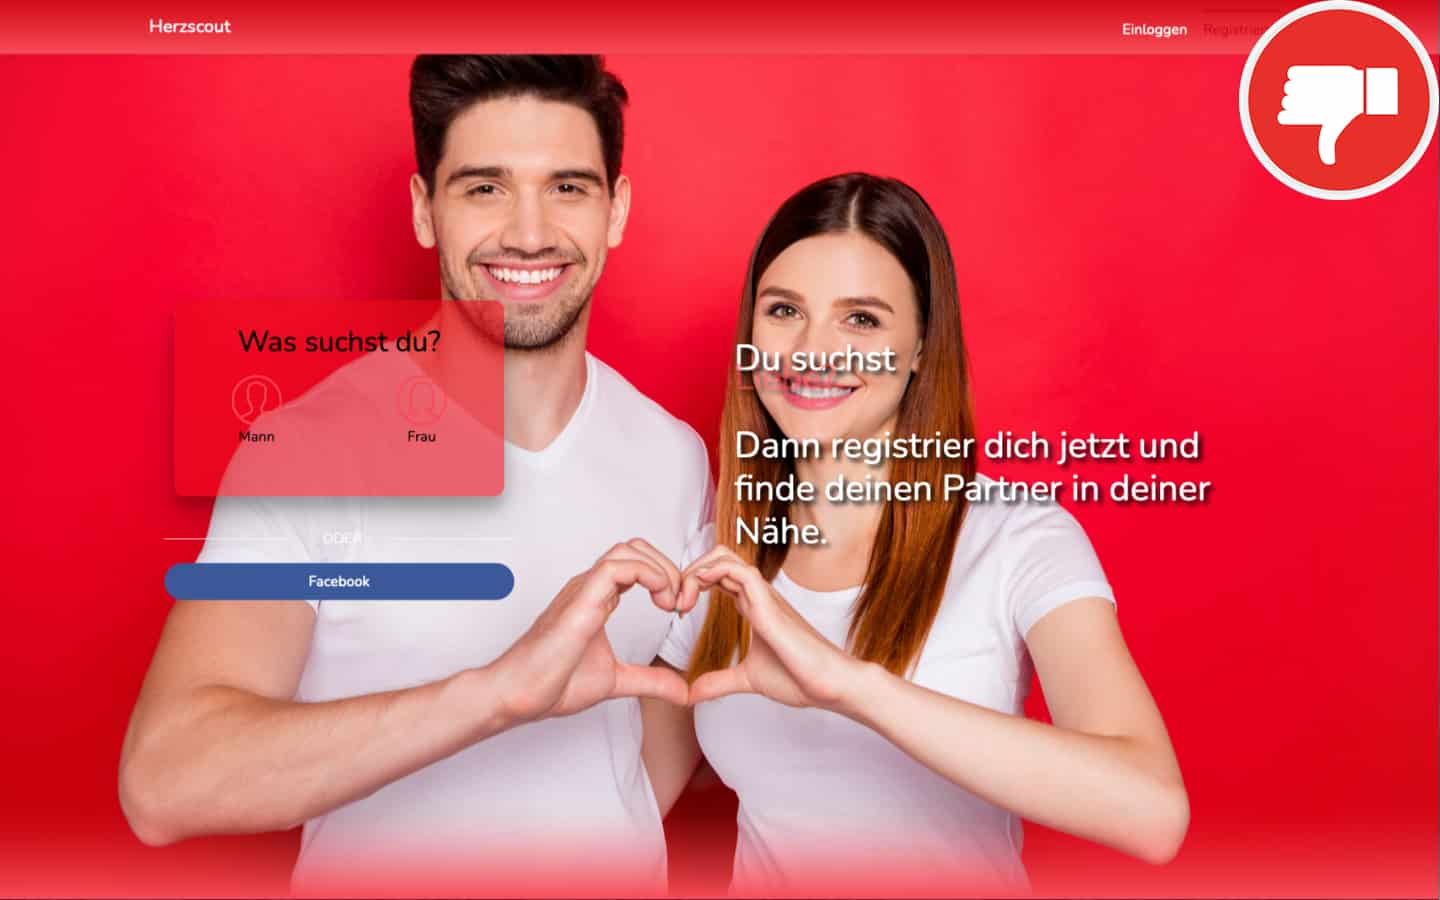 Top casual dating seiten in deutschland